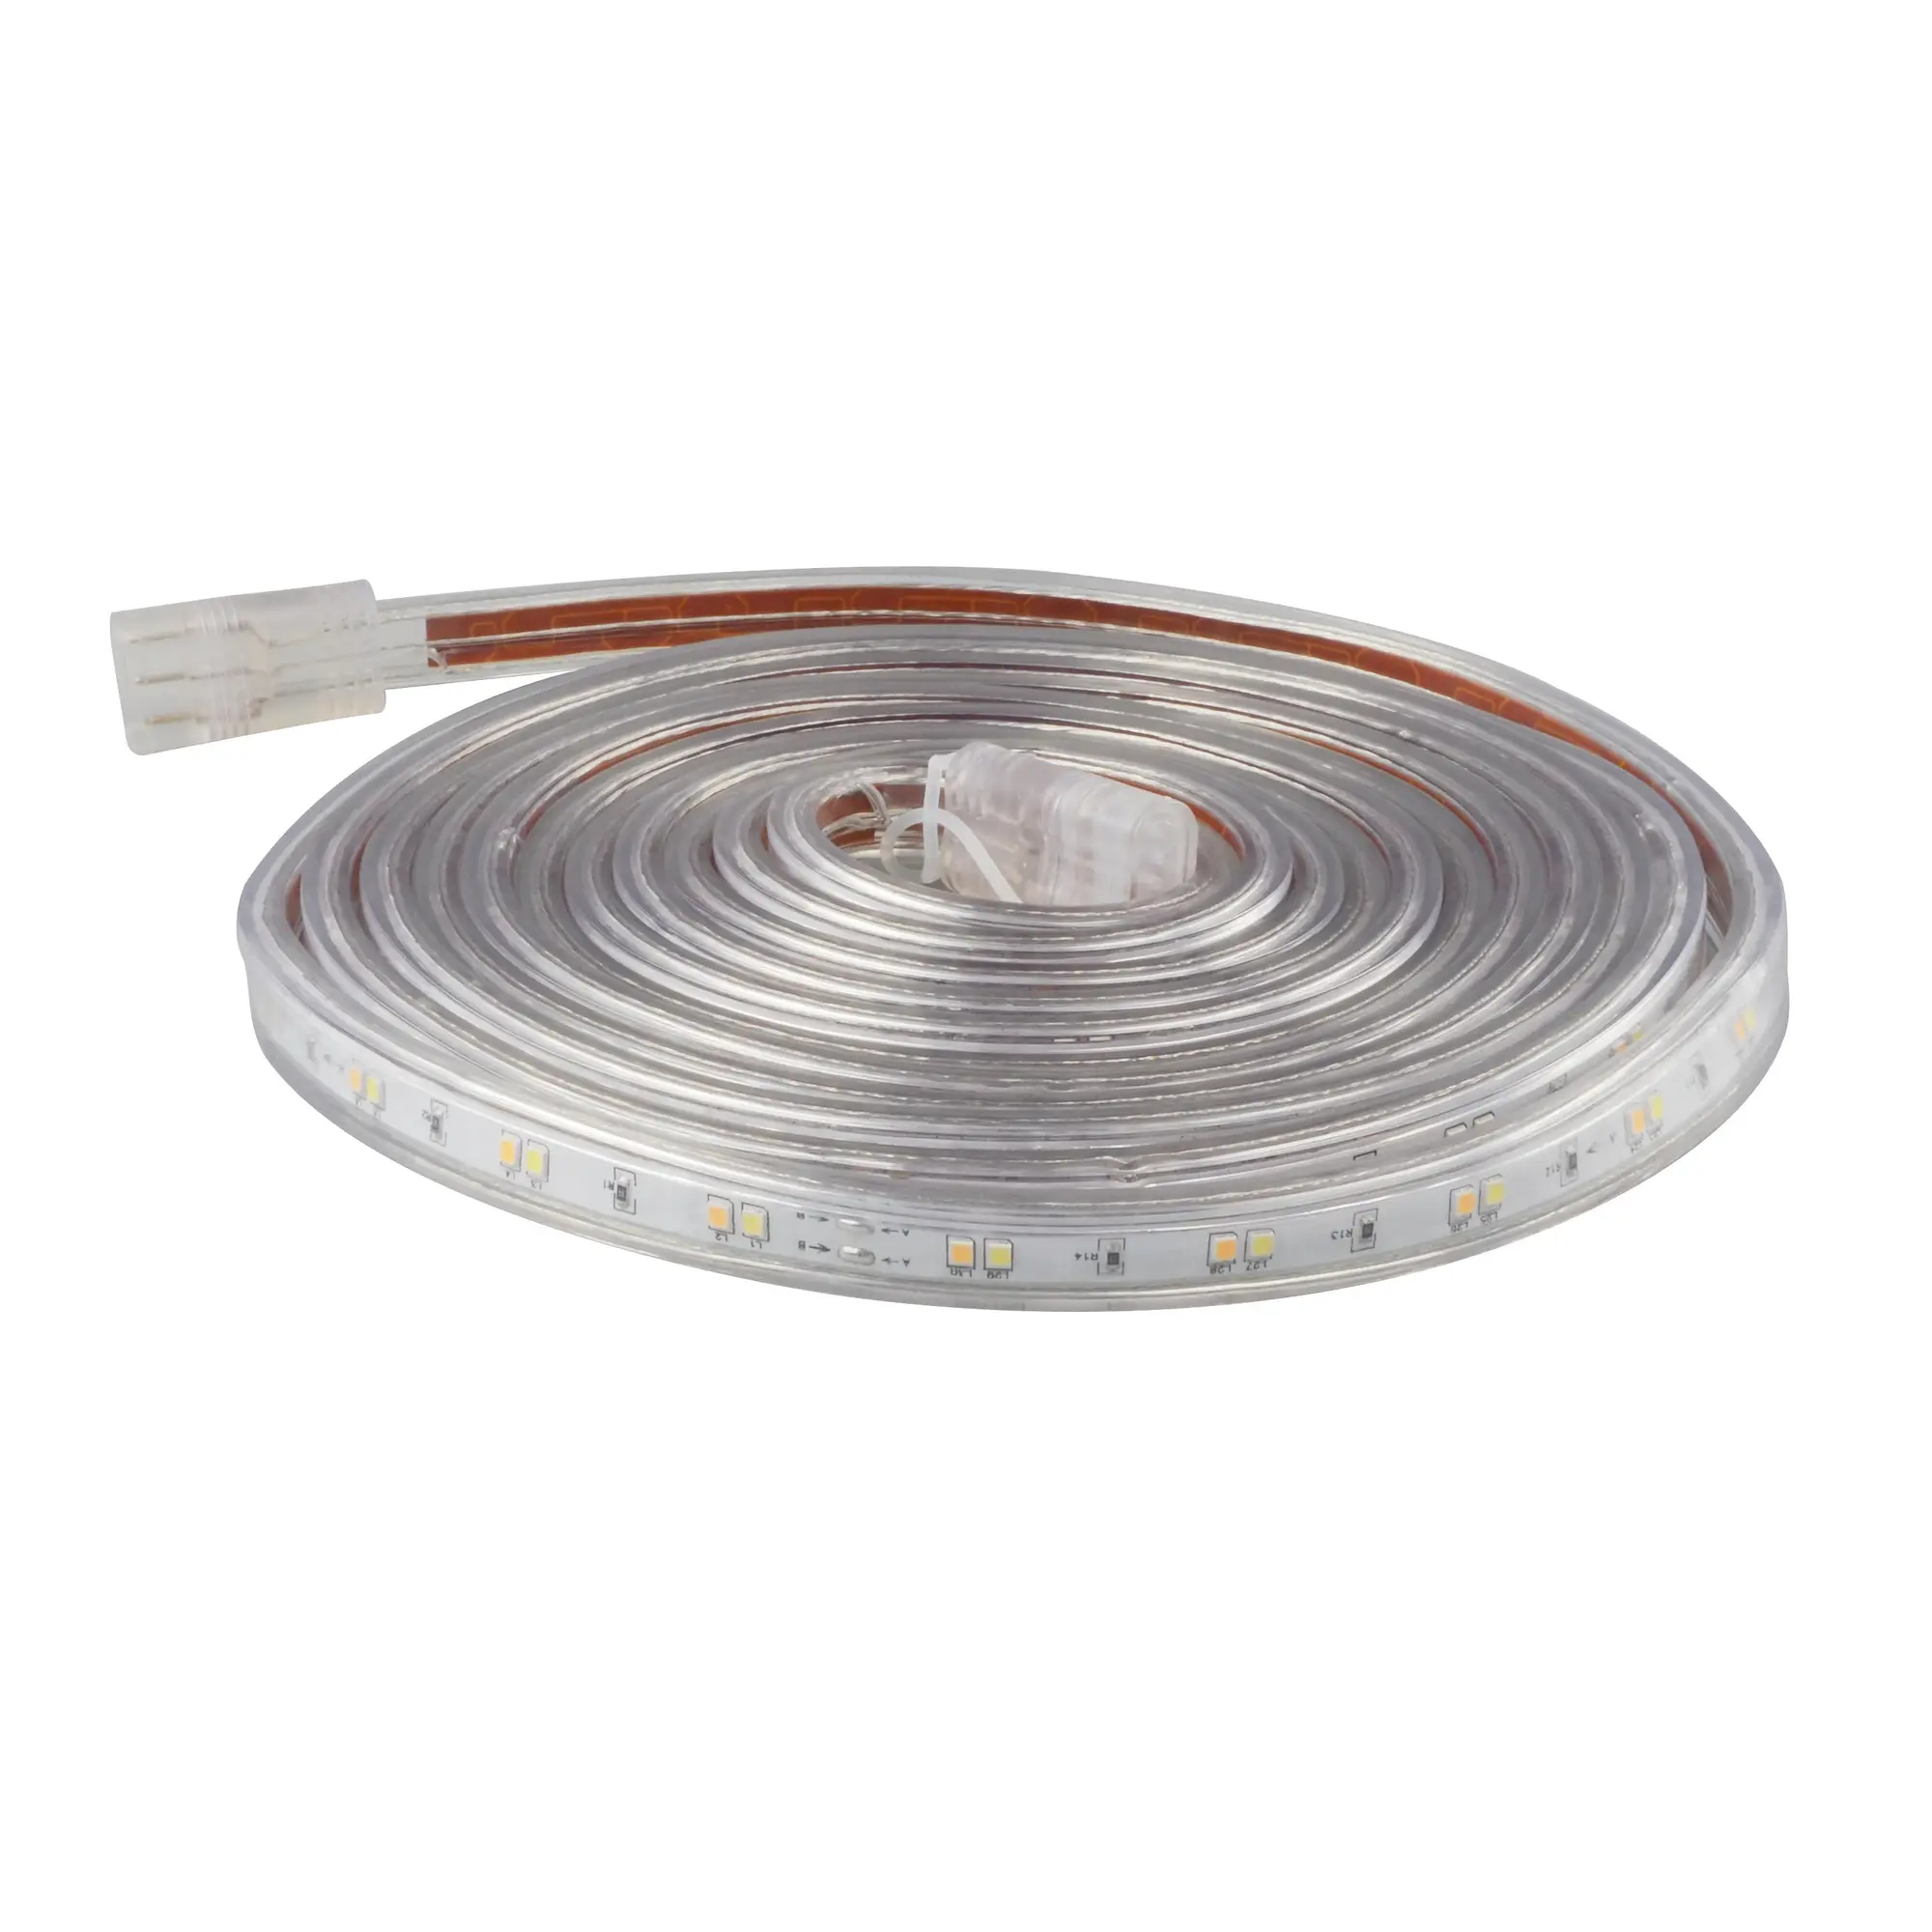 Ruban LED 14,4W/m température de couleur variable - Blanc pur, chaud -  ®